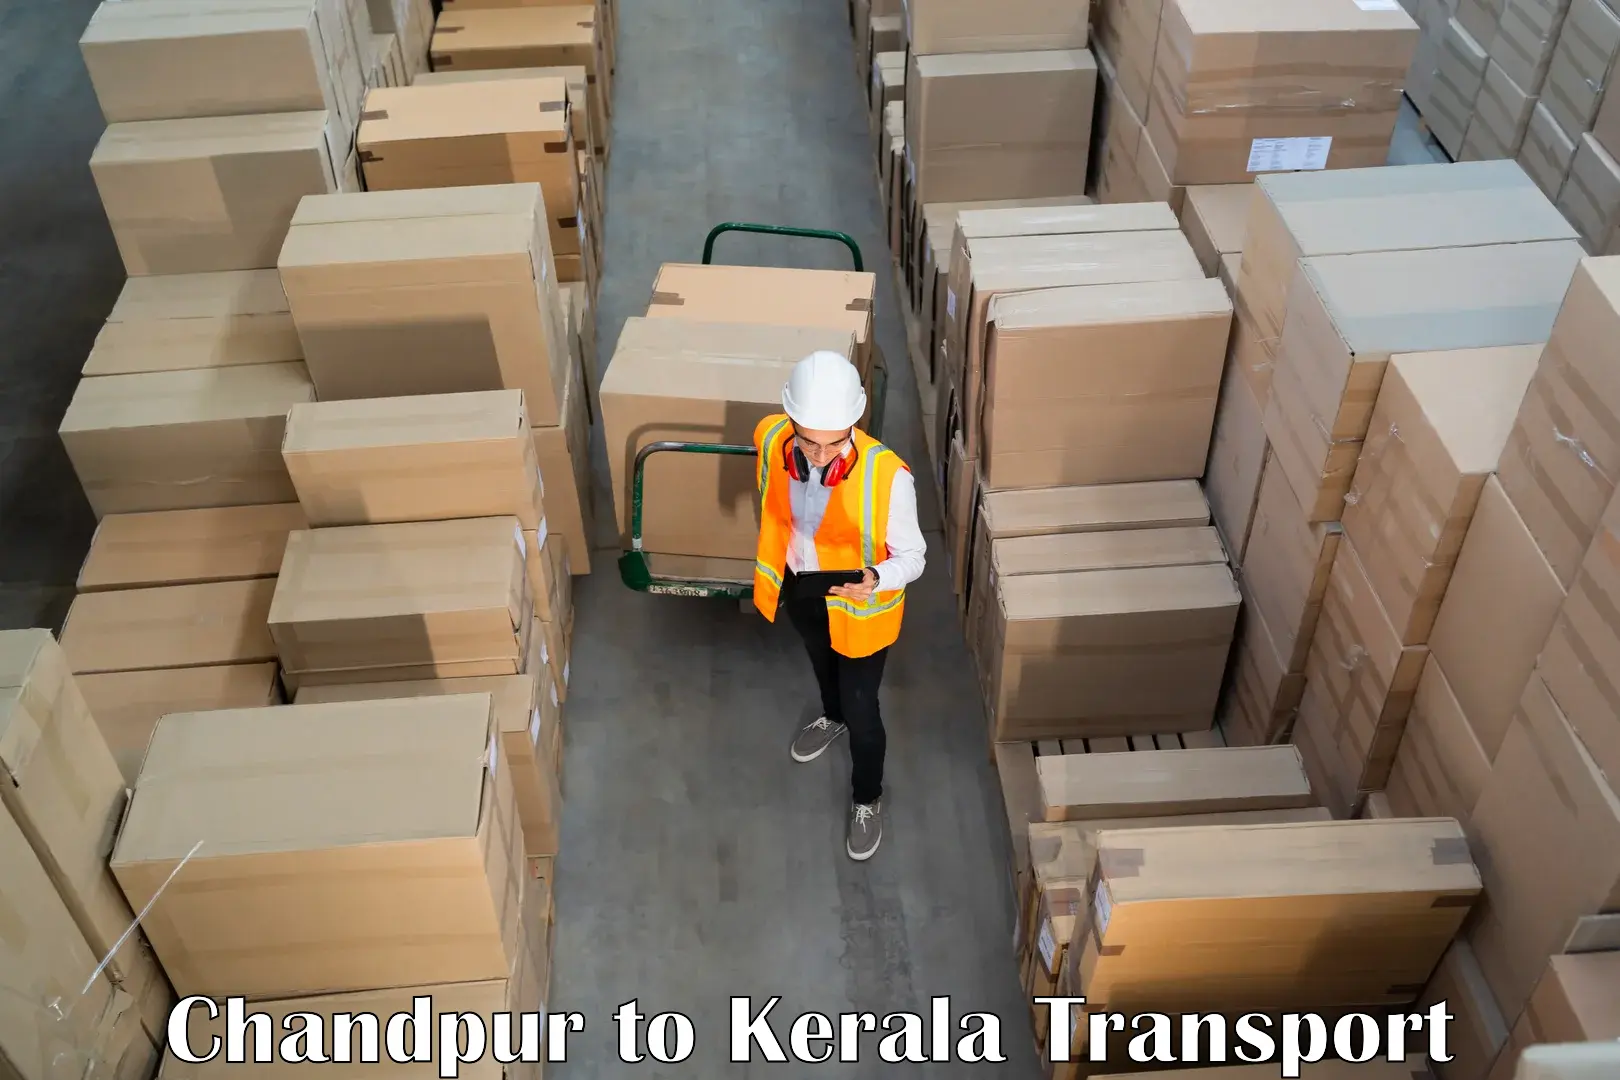 Cargo transportation services Chandpur to Thrissur